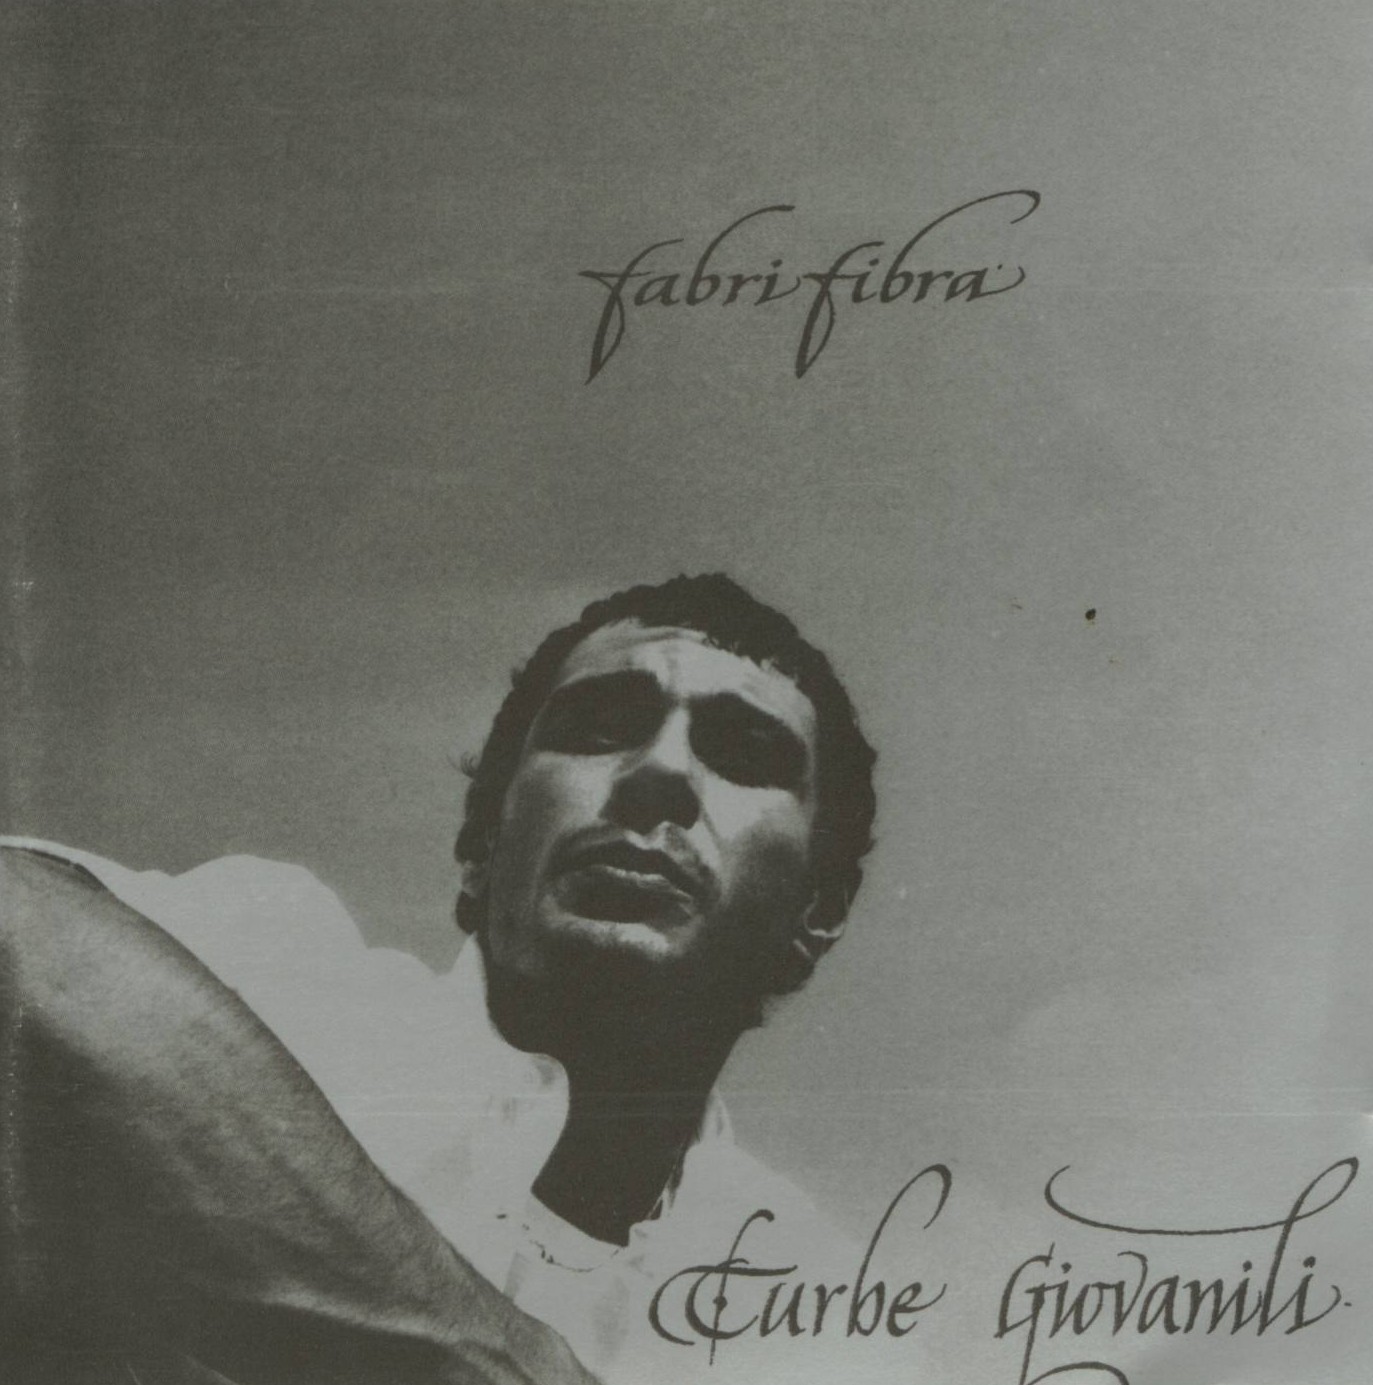 Fabri Fibra Guerra E Pace Vinyl Record